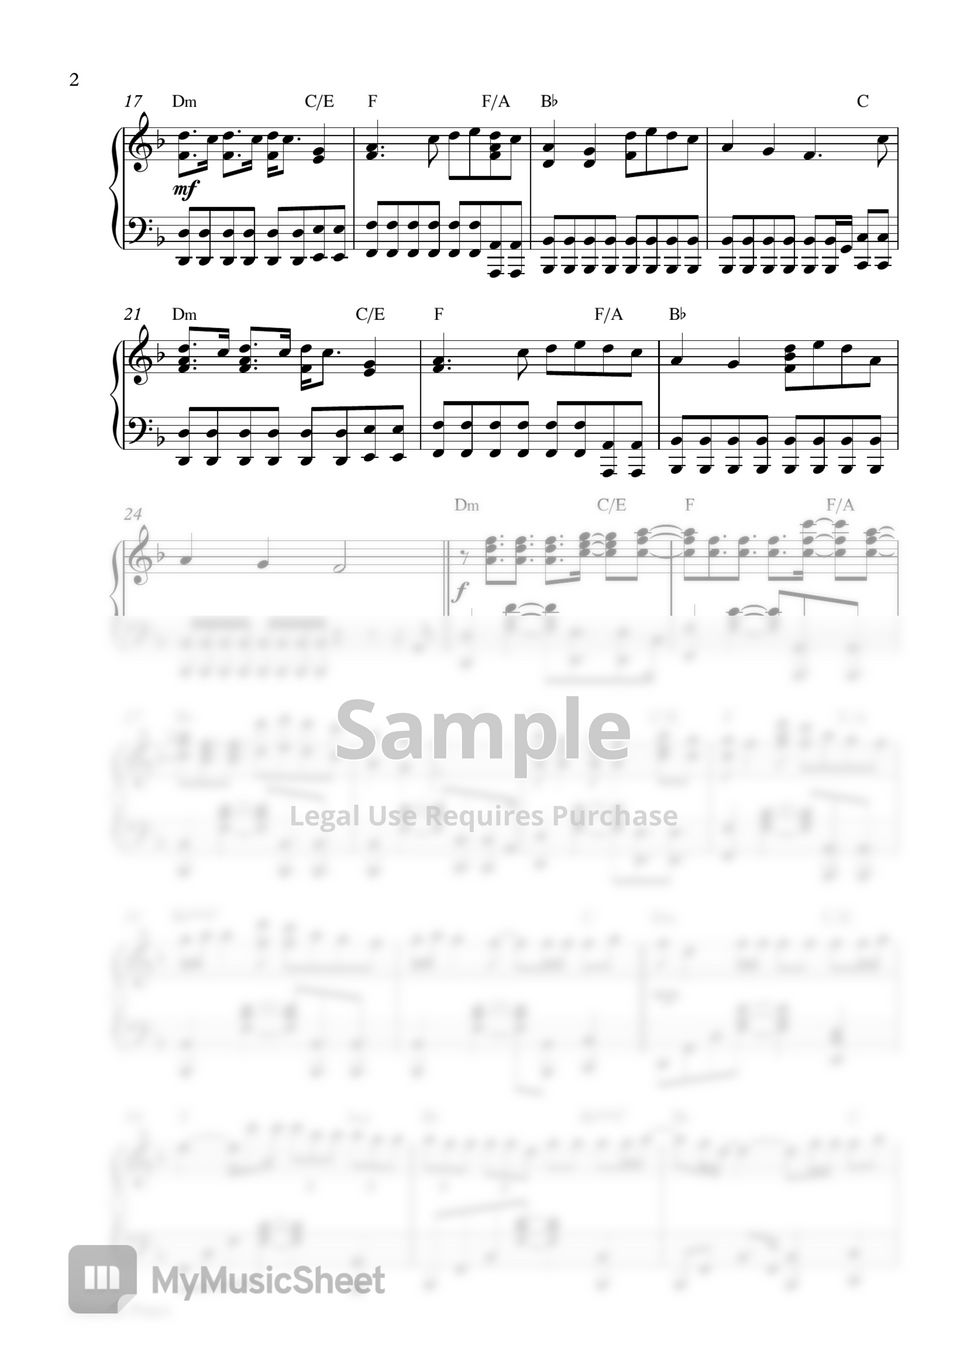 Marshmello - Happier (Piano Sheet) by Pianella Piano